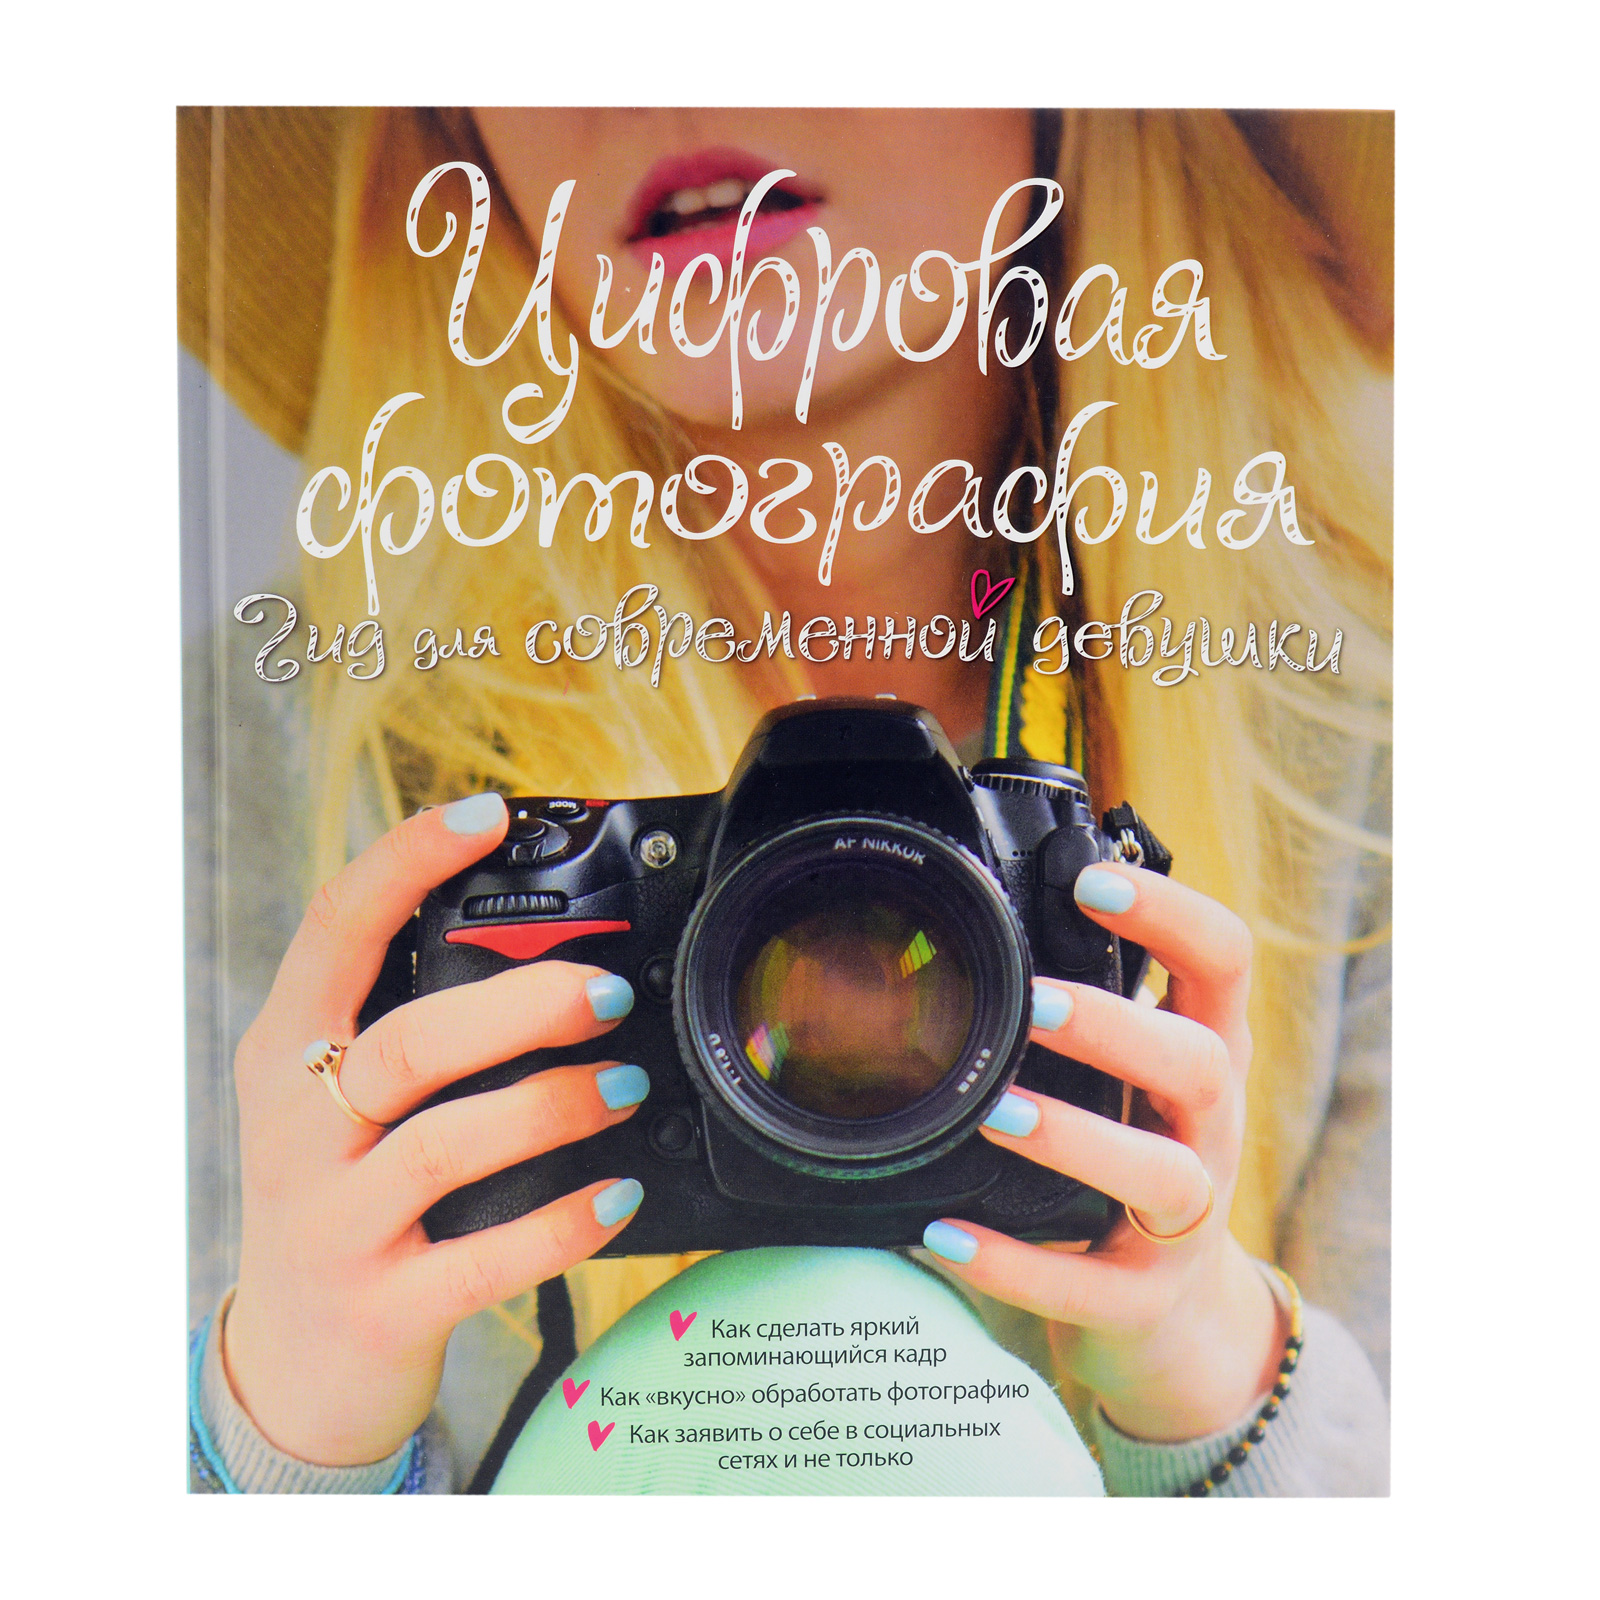 Книга "Цифровая фотография гид для современной девушки" Л.ЯбслиД. Гаррет, Г.Харрис б/у